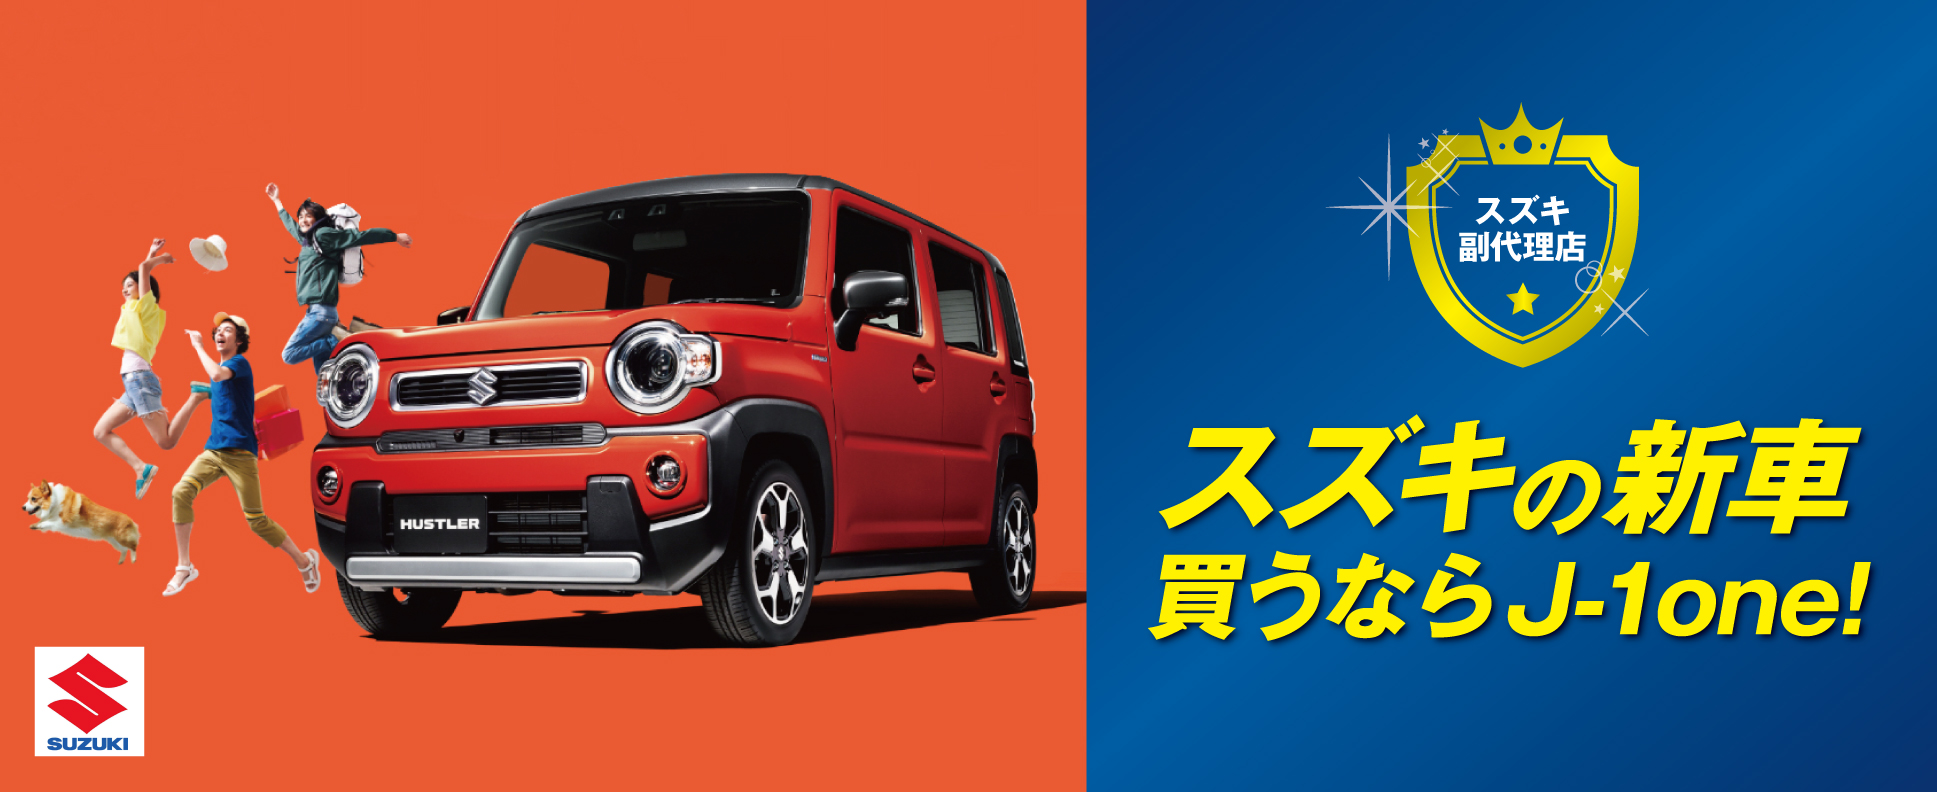 スズキの新車買うなら函館の新車販売、中古車販売　株式会社サトウ自動車函館　J-1one